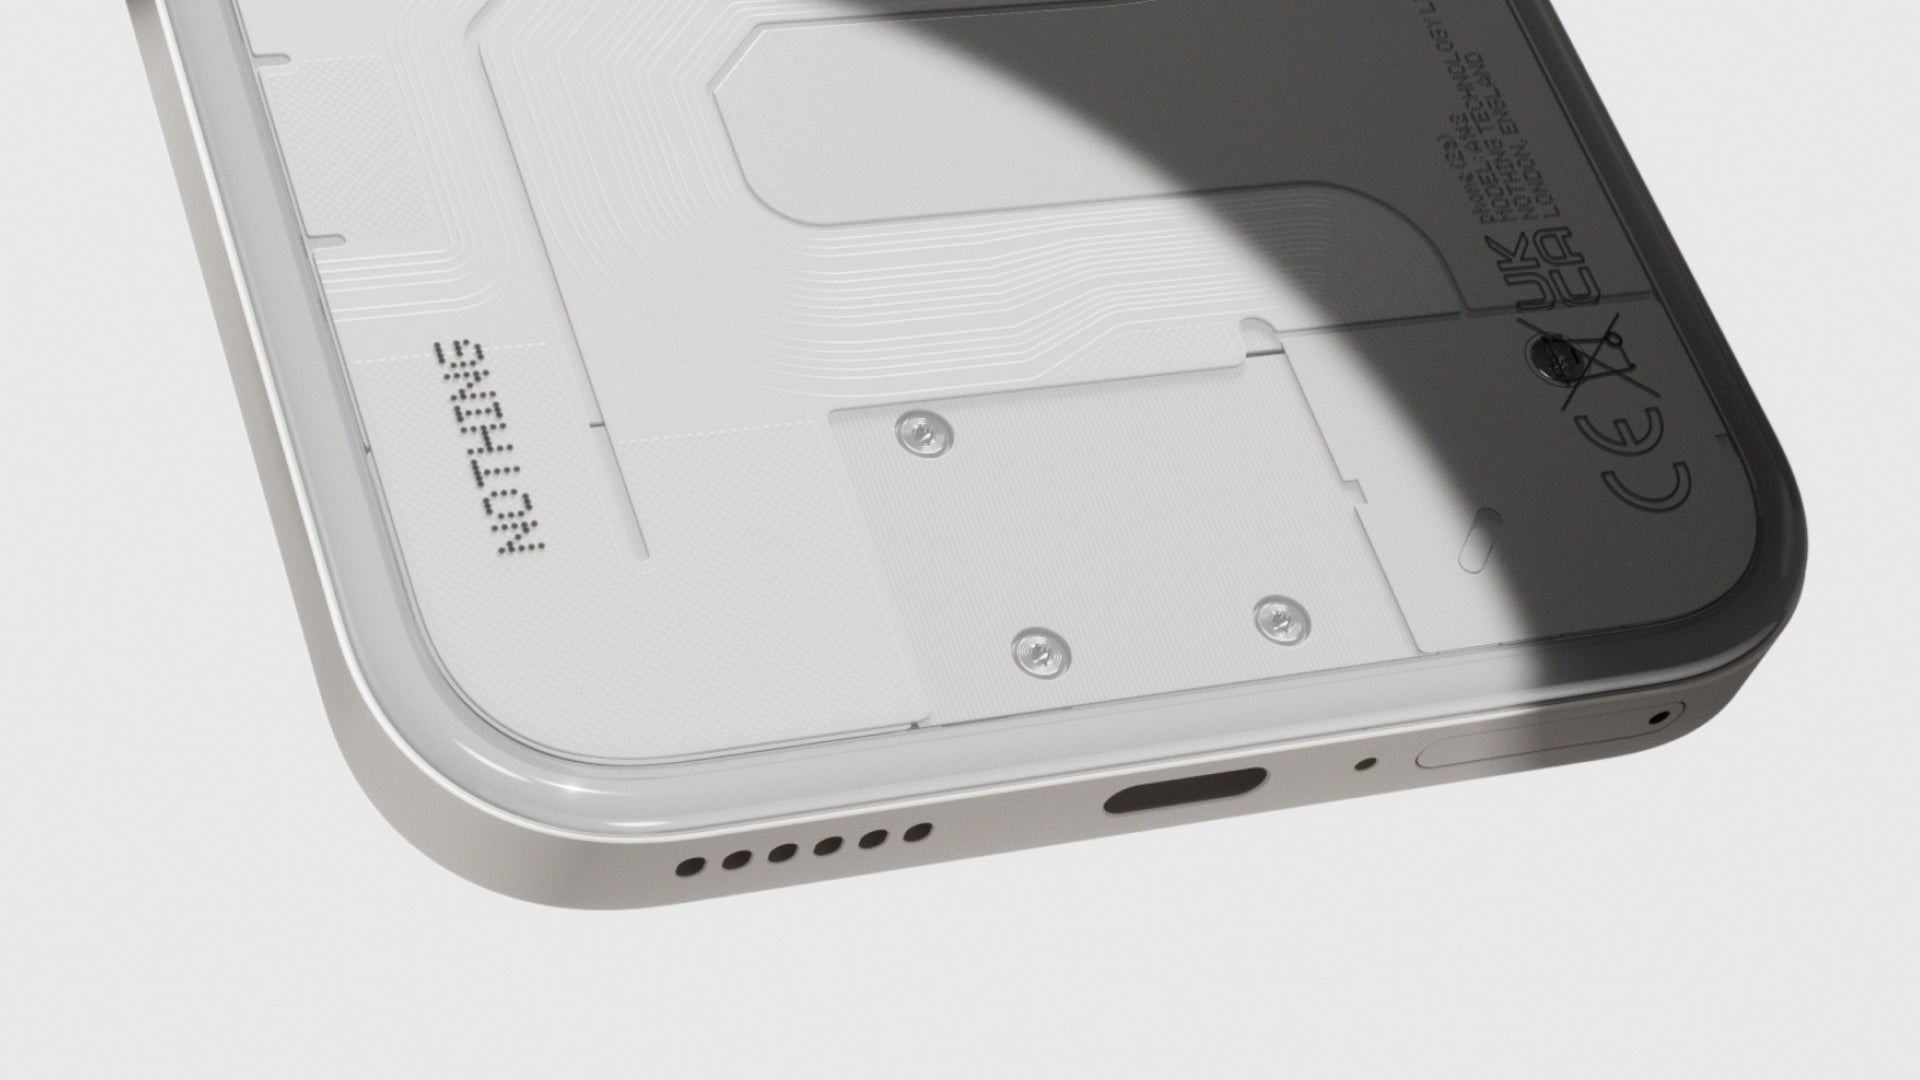 Crédit d'image – Rien – Nothing Phone (2a) est officiel : grosse batterie, design audacieux, prix économique